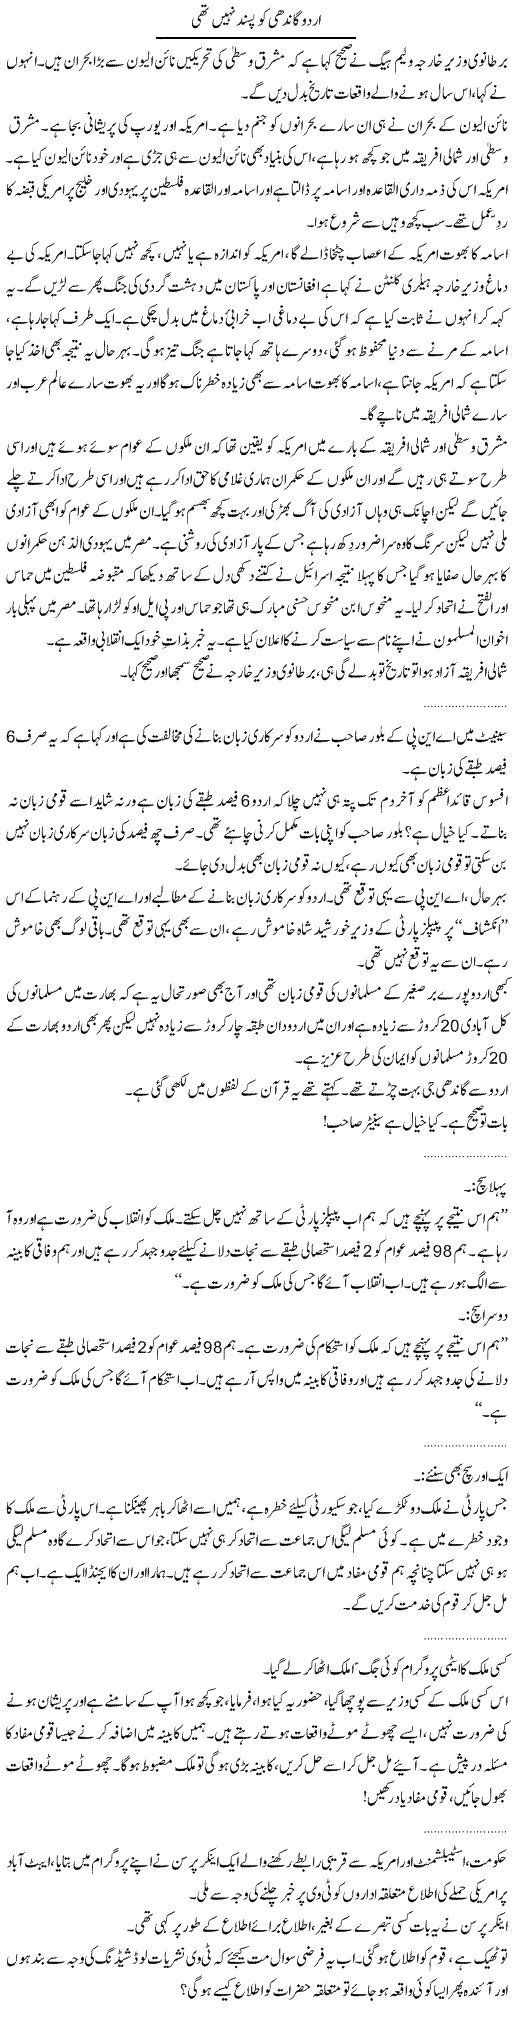 Gandhi Not Liked Urdu Express Column Abdullah Tariq 7 May 2011